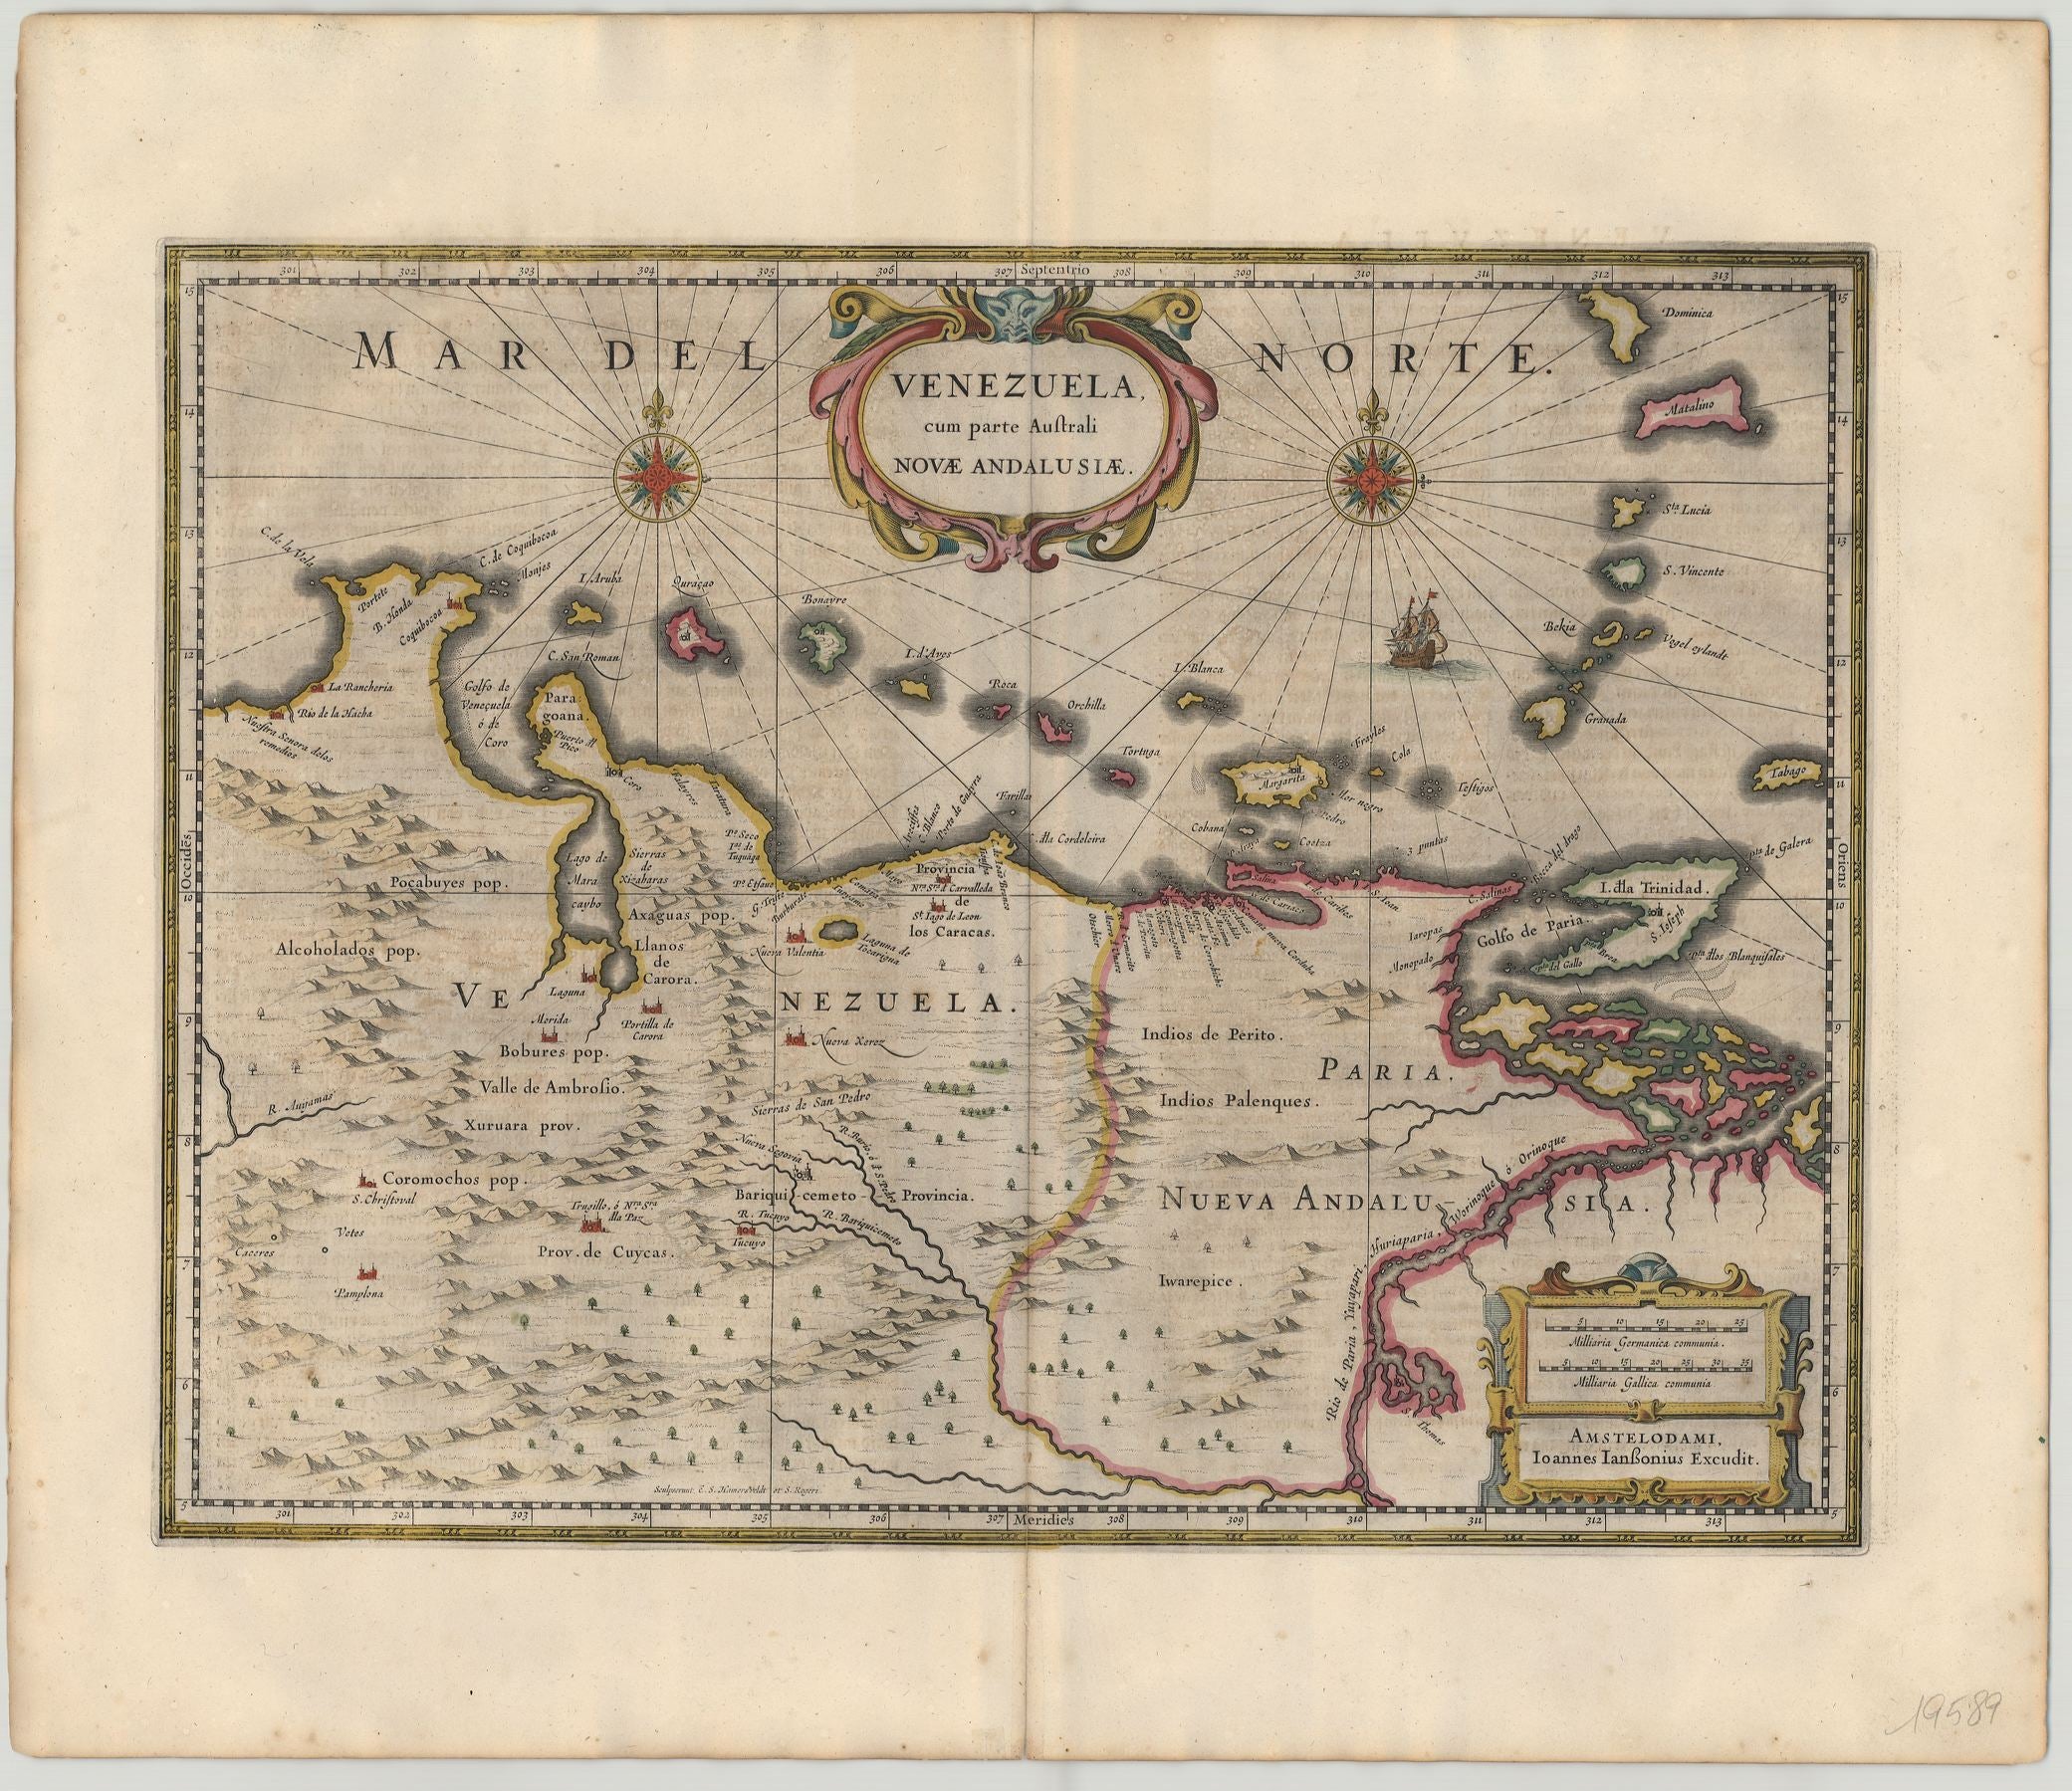 Venezuela ab 1644 von Johann Janssonius